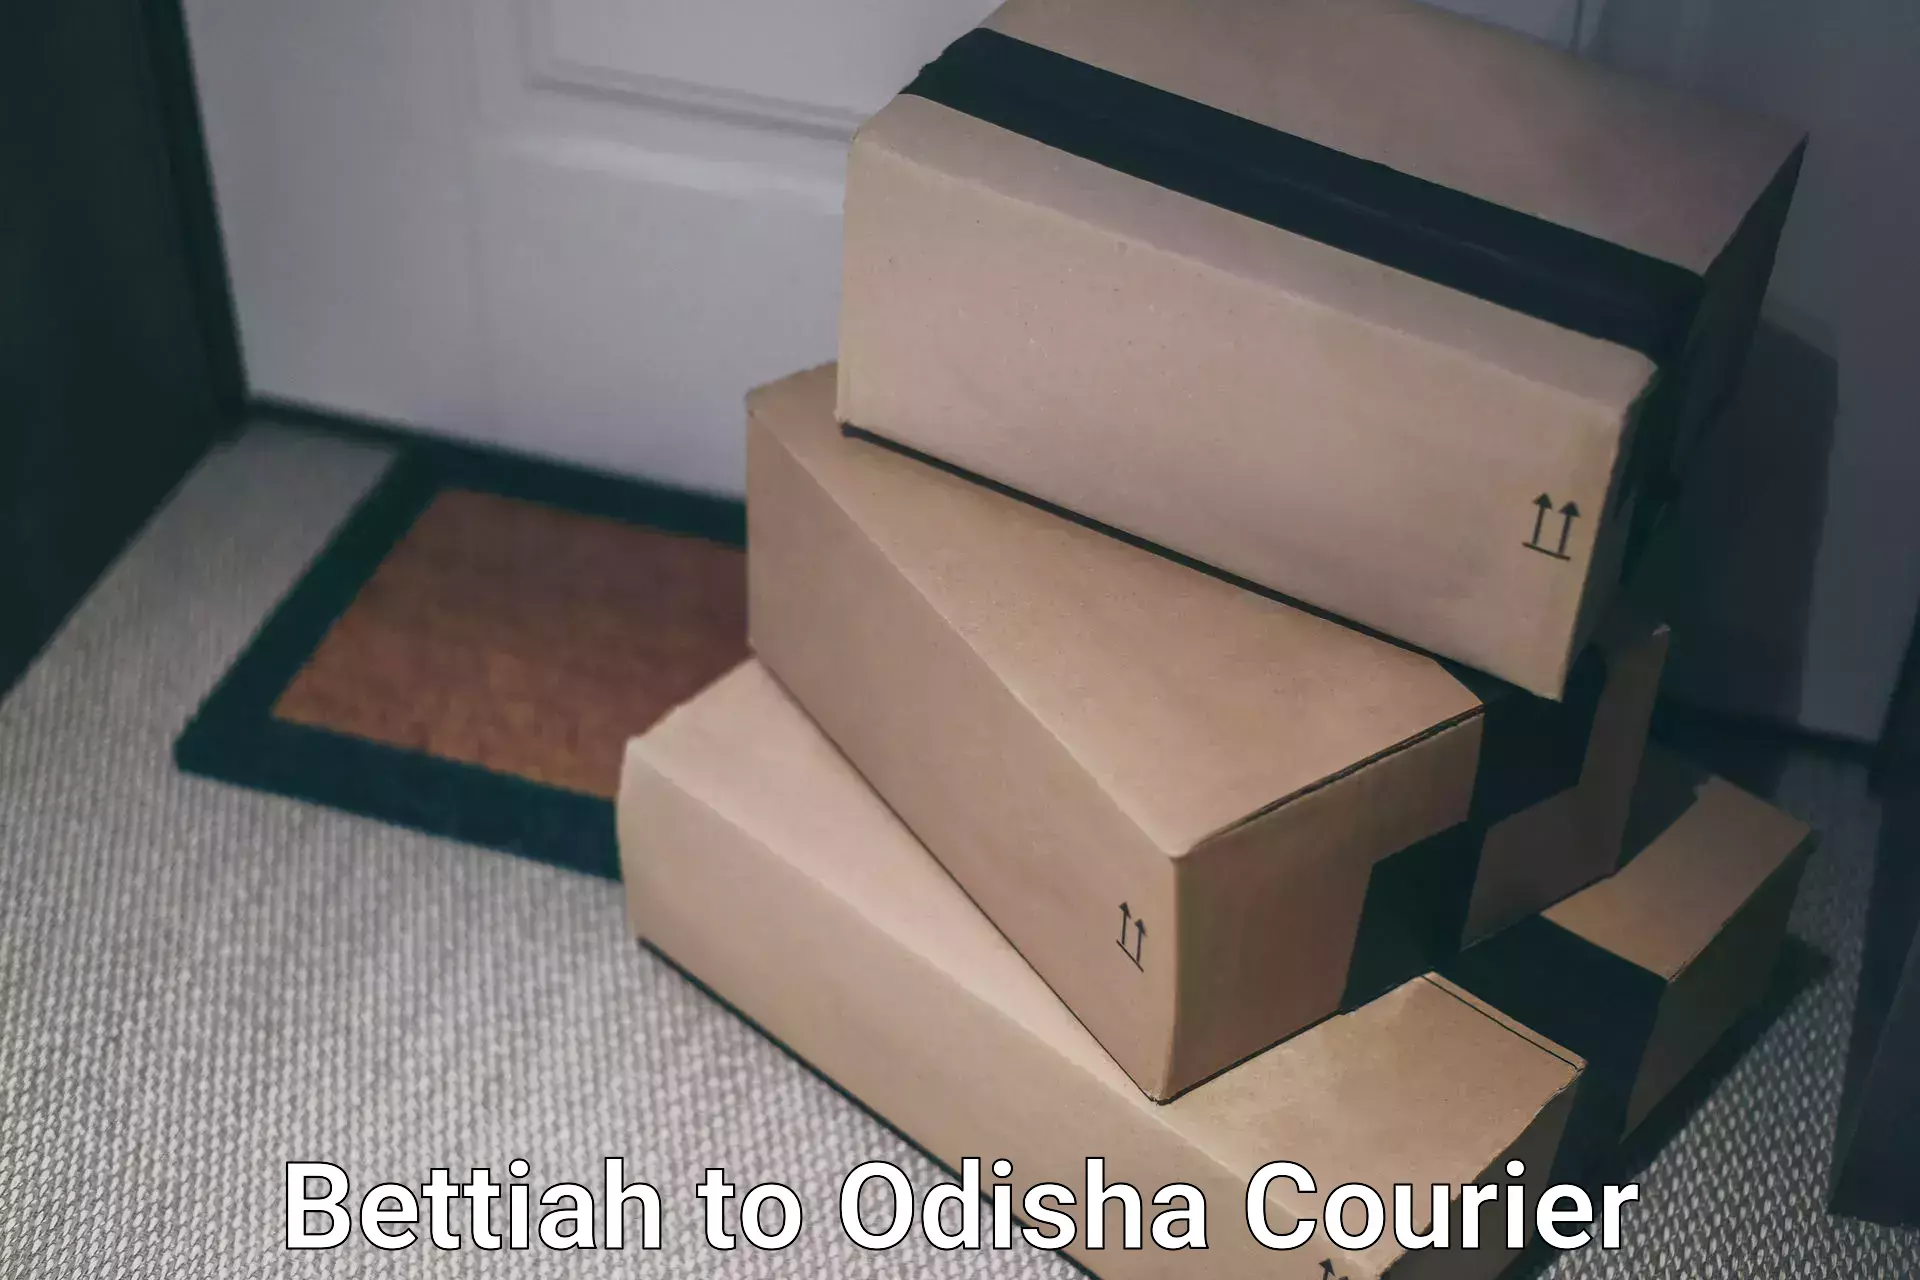 Shipping and handling Bettiah to Odisha